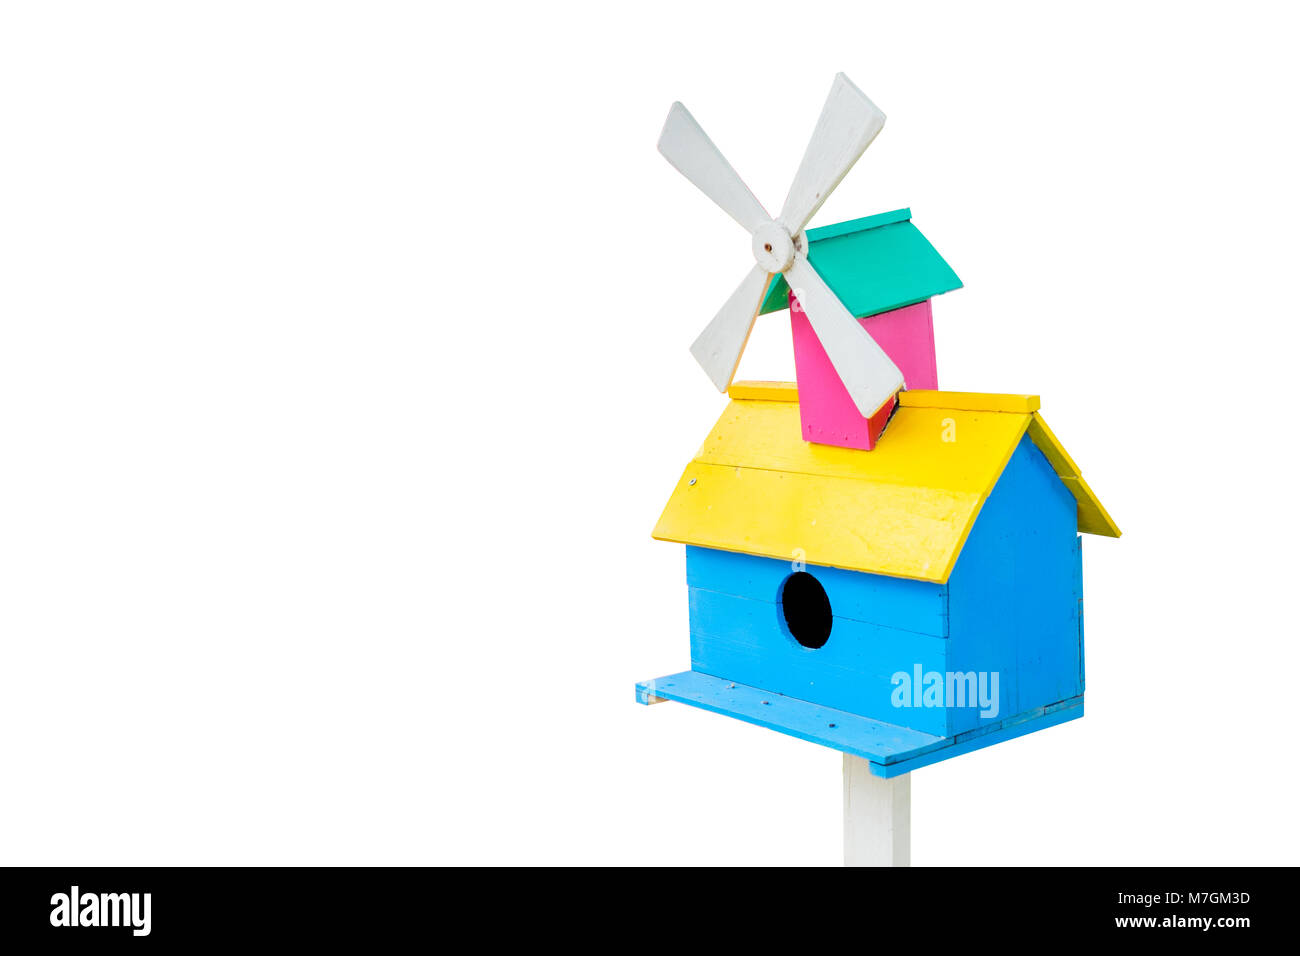 Isolato uccello variopinto house. Blue House, tetto giallo e bianco turbina eolica. Per esterno e giardino decorazione. Foto Stock